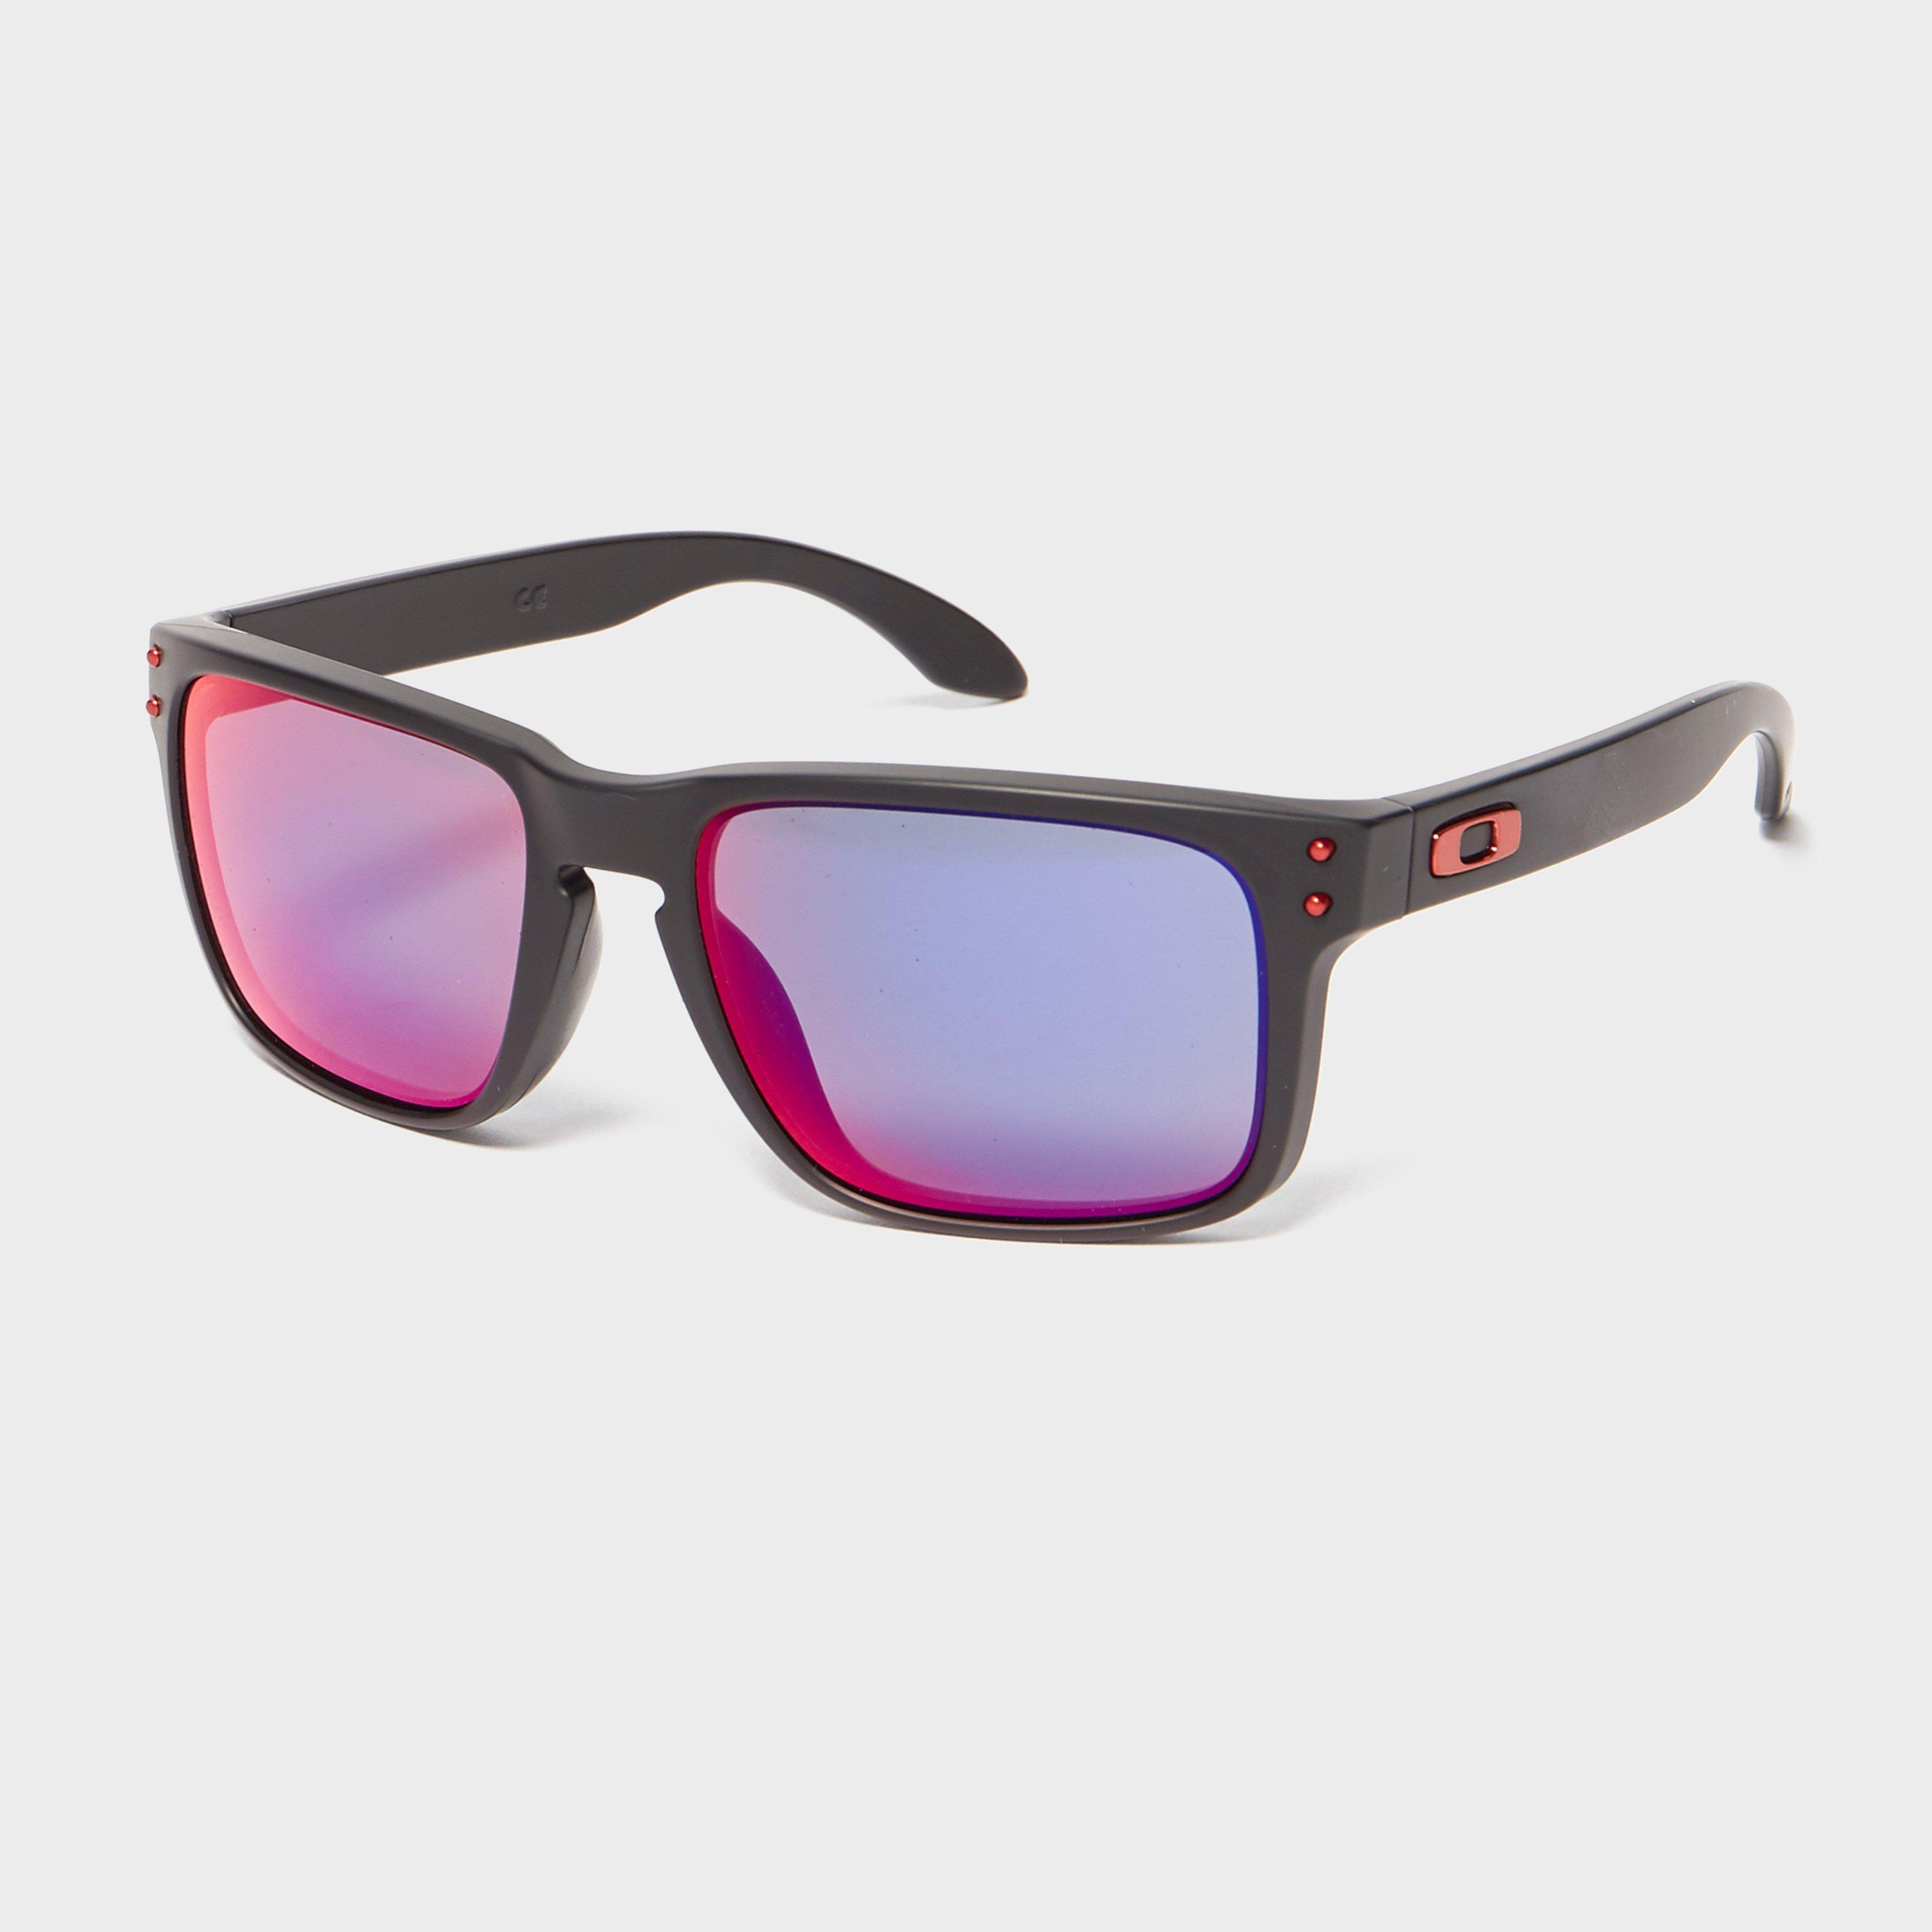 Oakley Holbrook Red Iridium Sunglasses - Multi/iridium  Multi/iridium